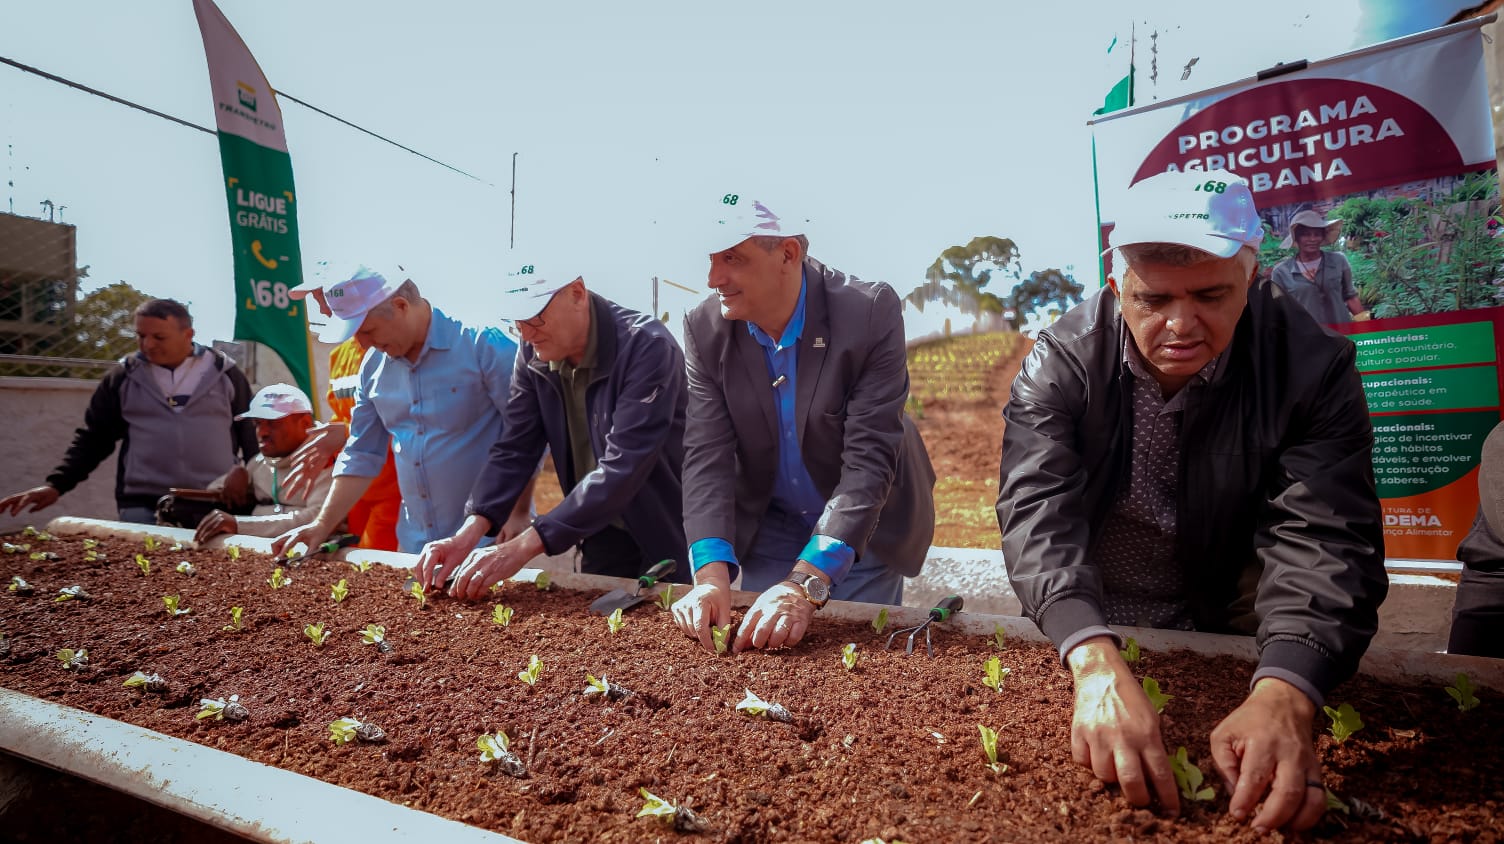 Inauguramos horta comunitária inclusiva em parceria com Prefeitura de Diadema